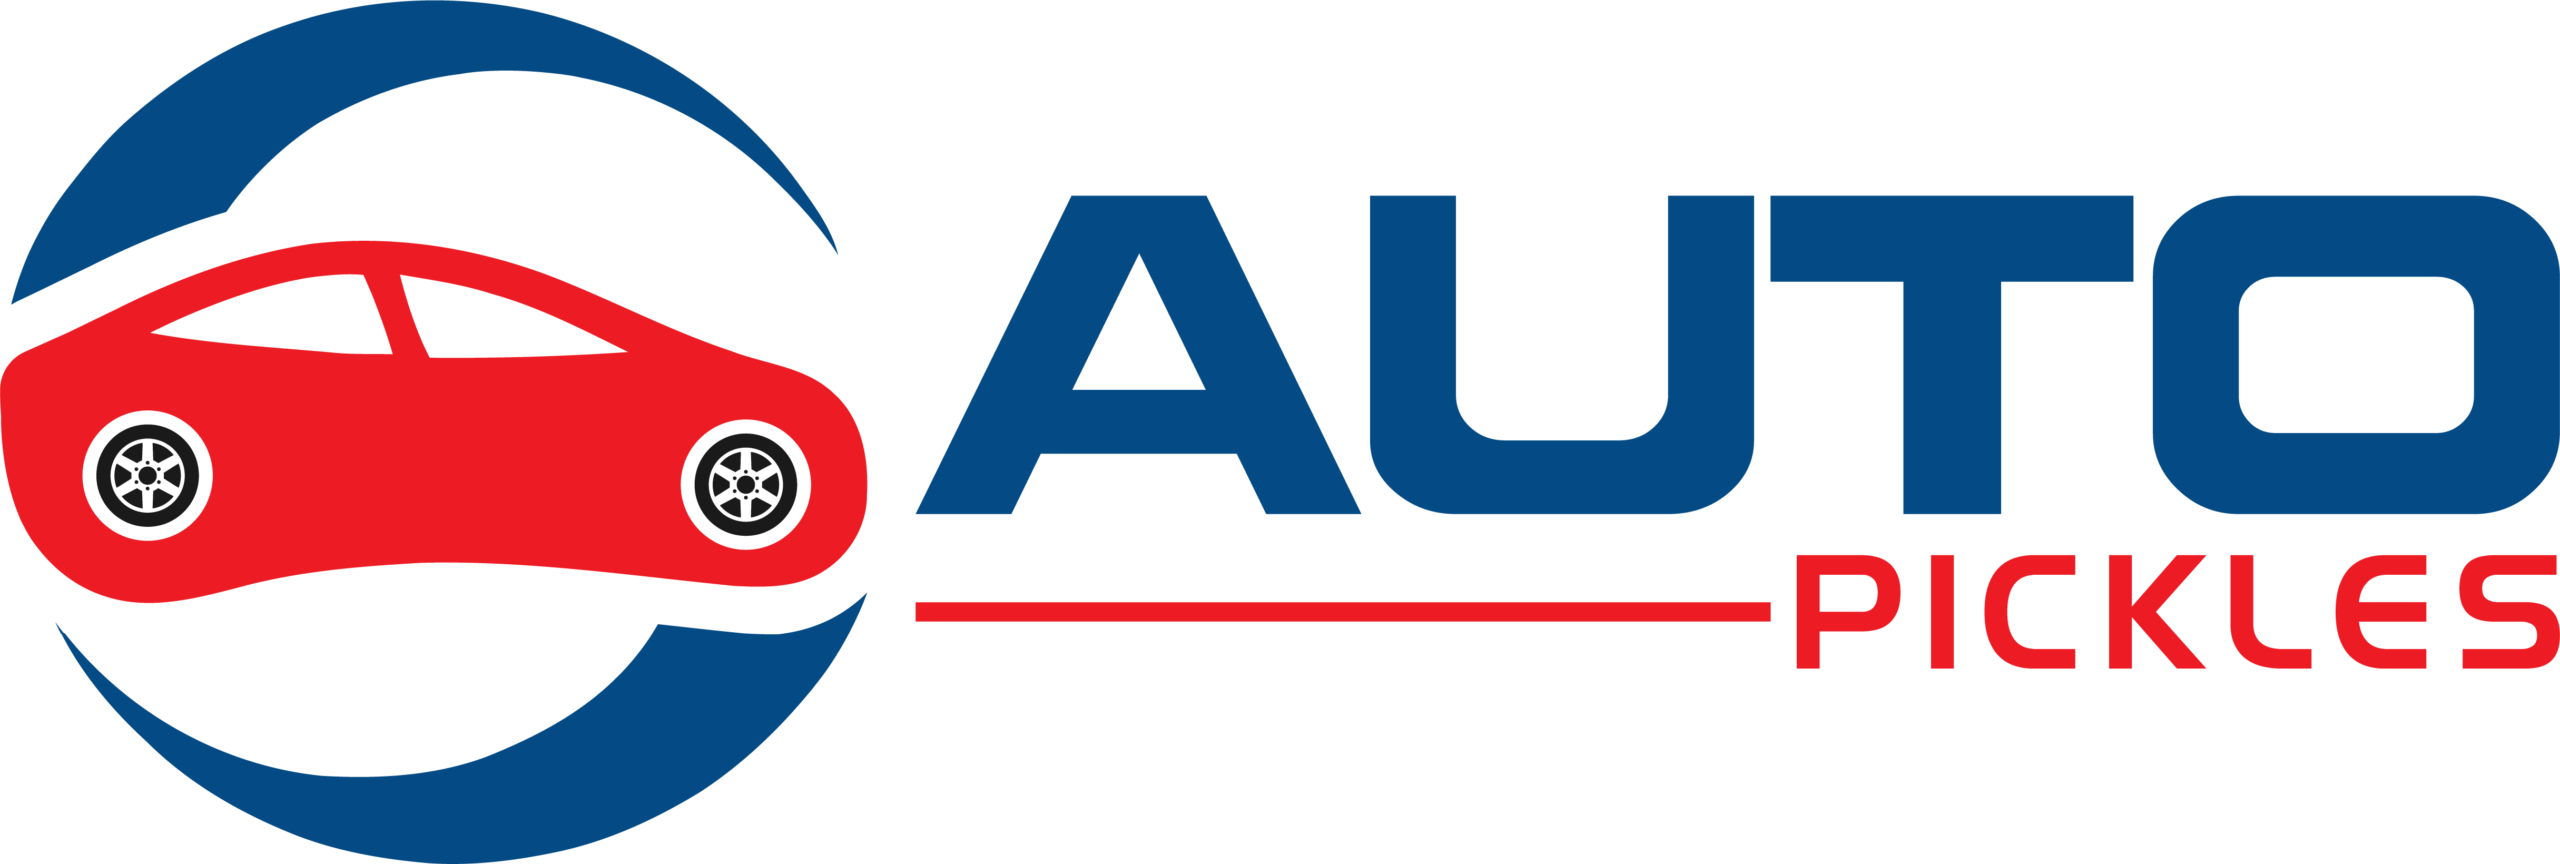 Autopickles.com Logo